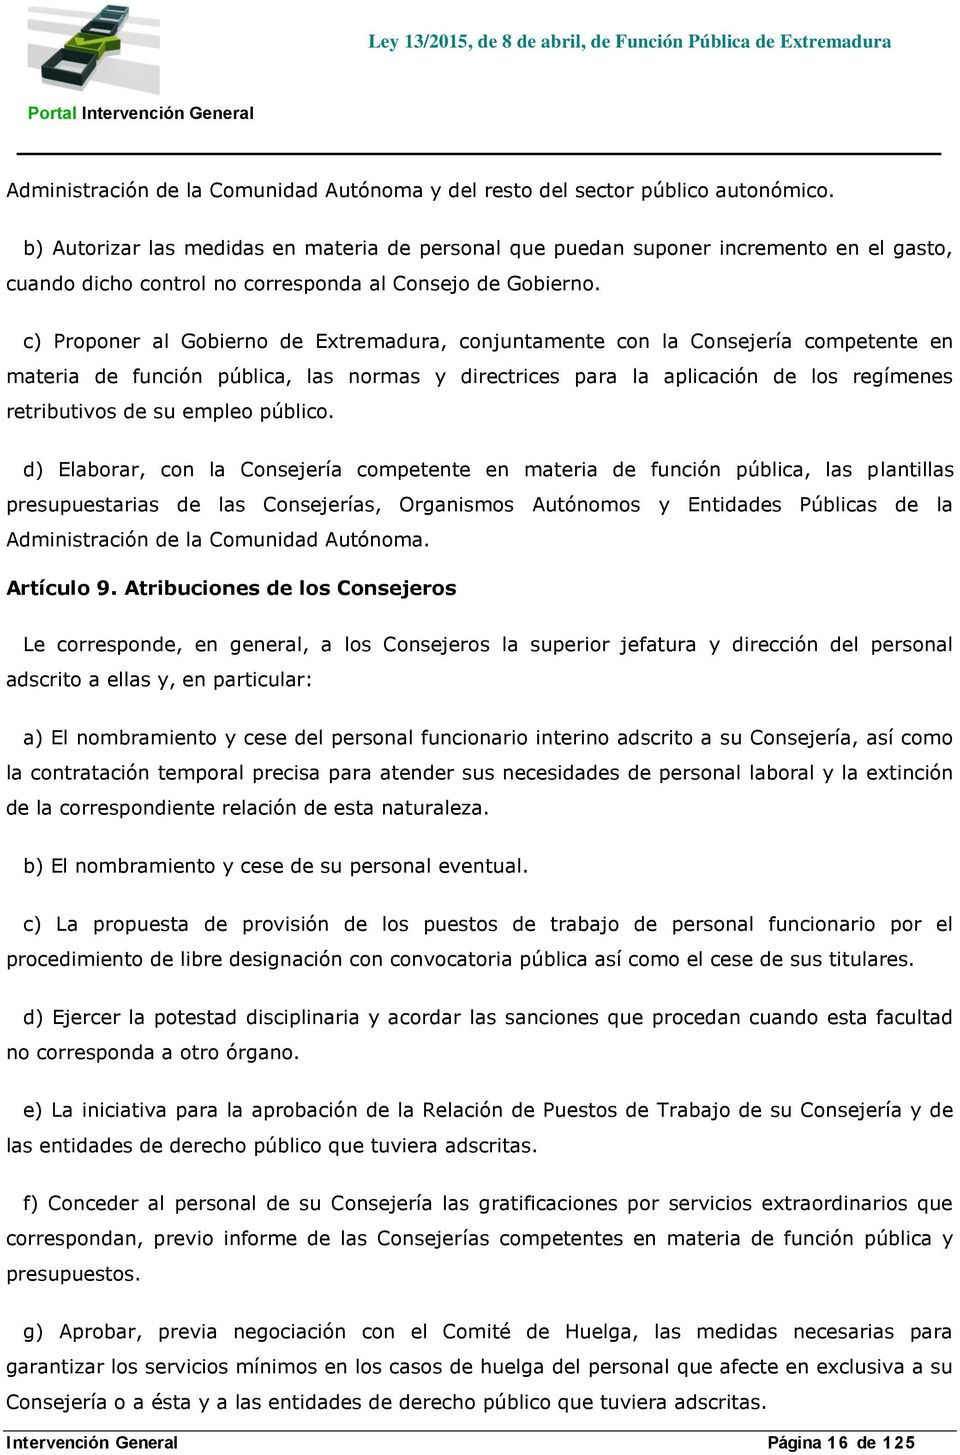 c) Proponer al Gobierno de Extremadura, conjuntamente con la Consejería competente en materia de función pública, las normas y directrices para la aplicación de los regímenes retributivos de su